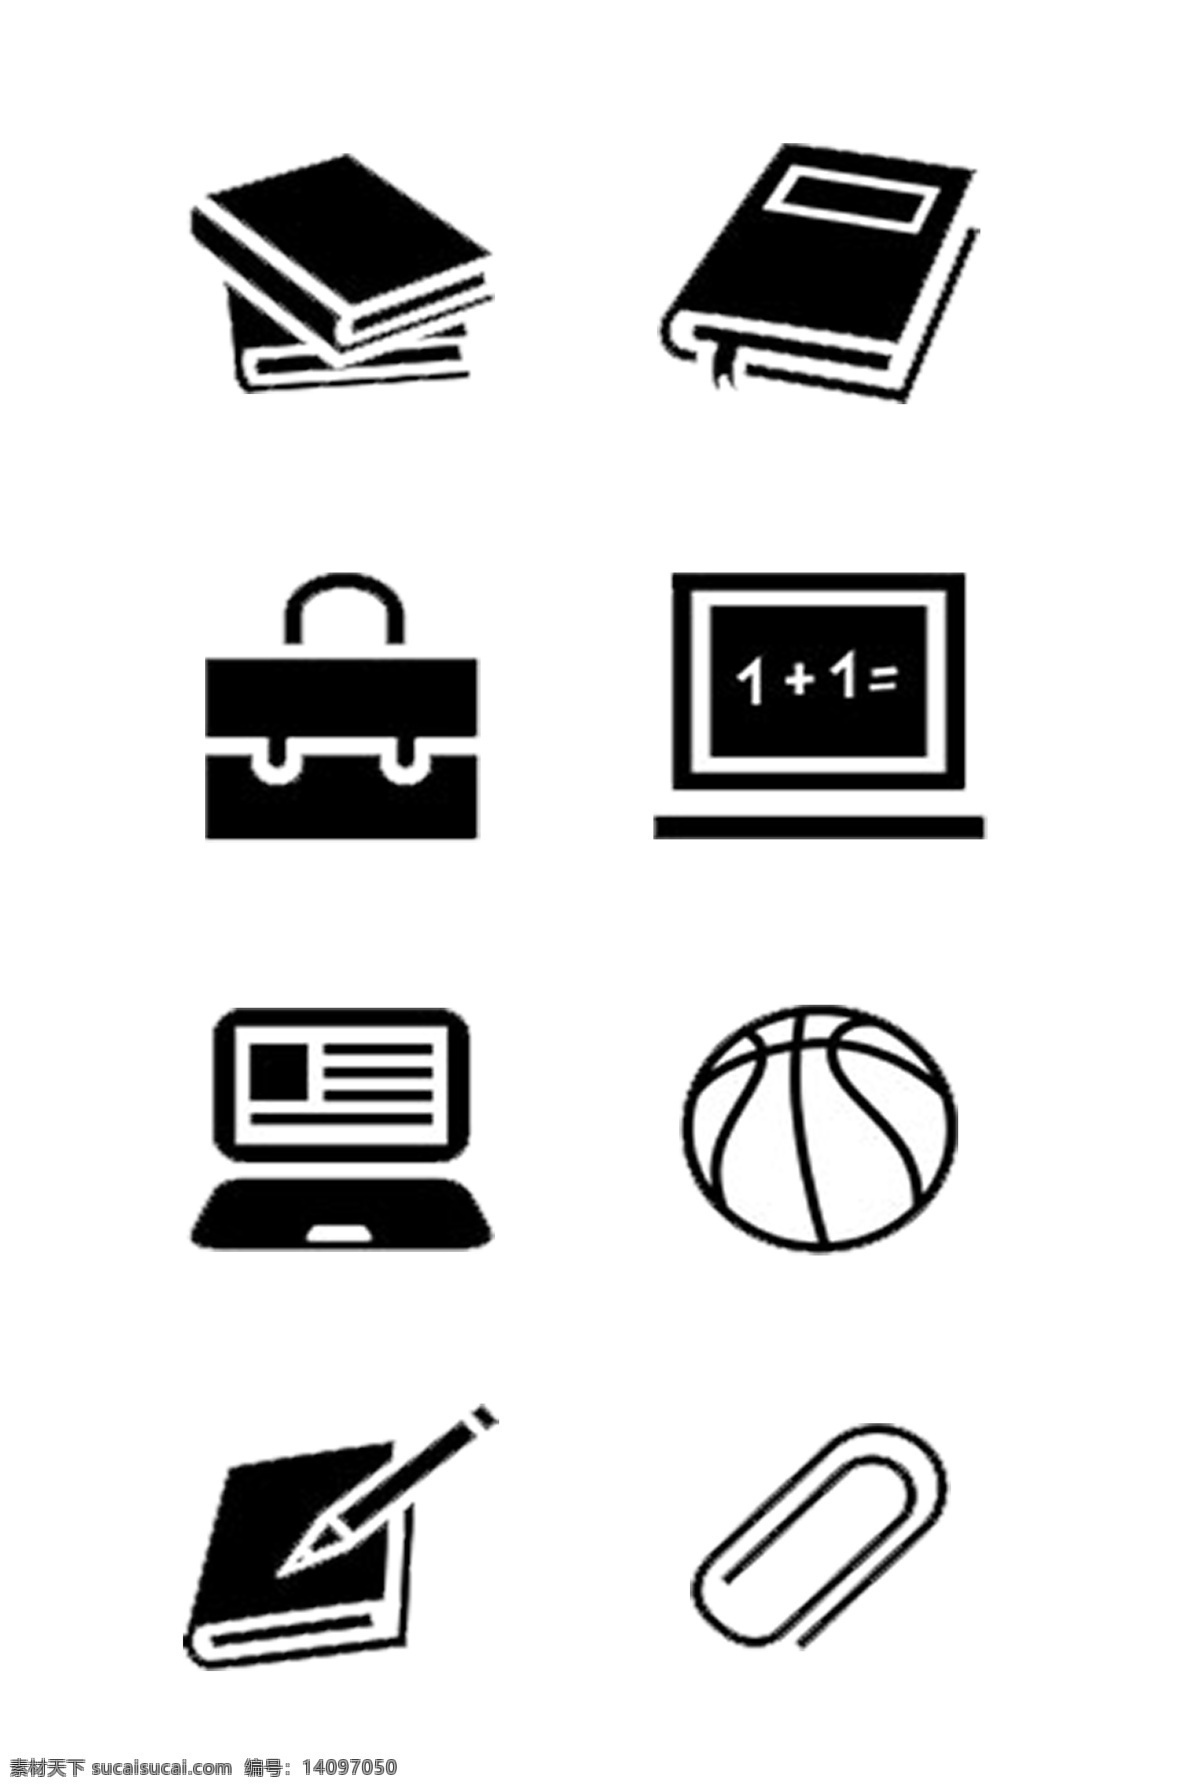 学校 使用 图标素材 图标 书本 课本 书签 公文包 黑板 电脑屏幕 篮球 可分开使用 免抠 png格式